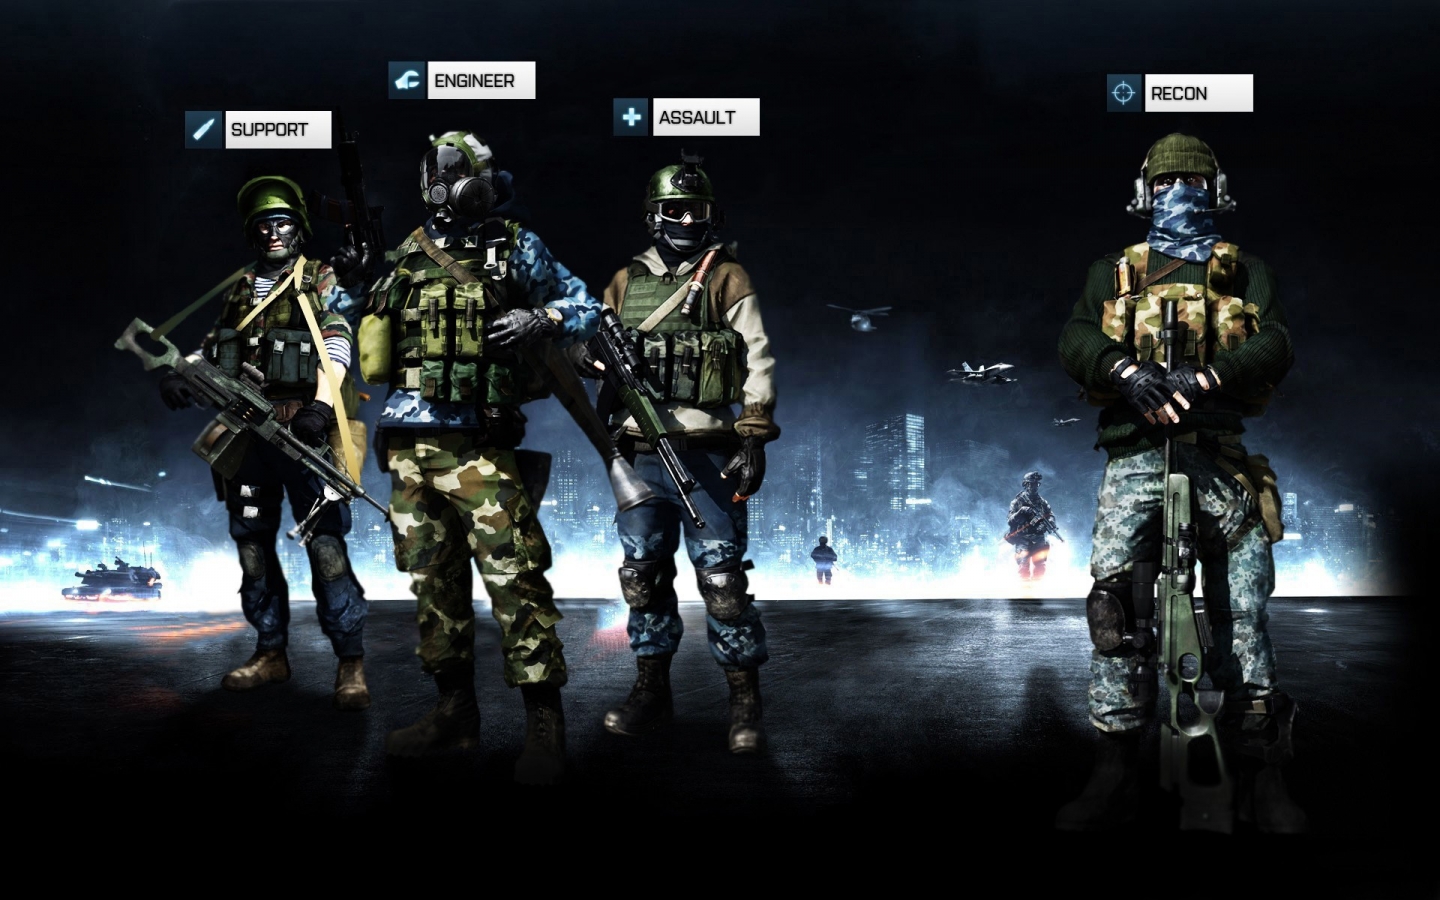 Battlefield 3 Team for 1440 x 900 widescreen resolution